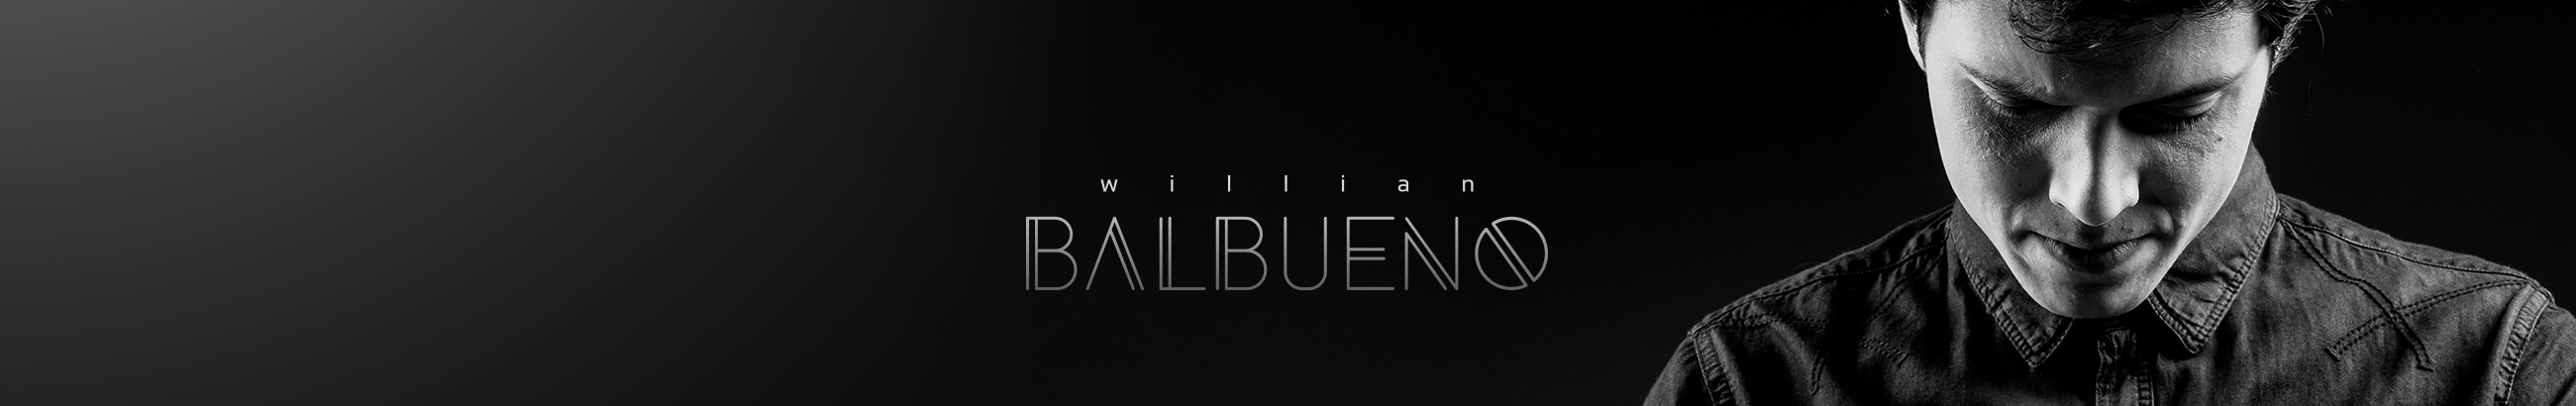 Willian Balbueno's profile banner